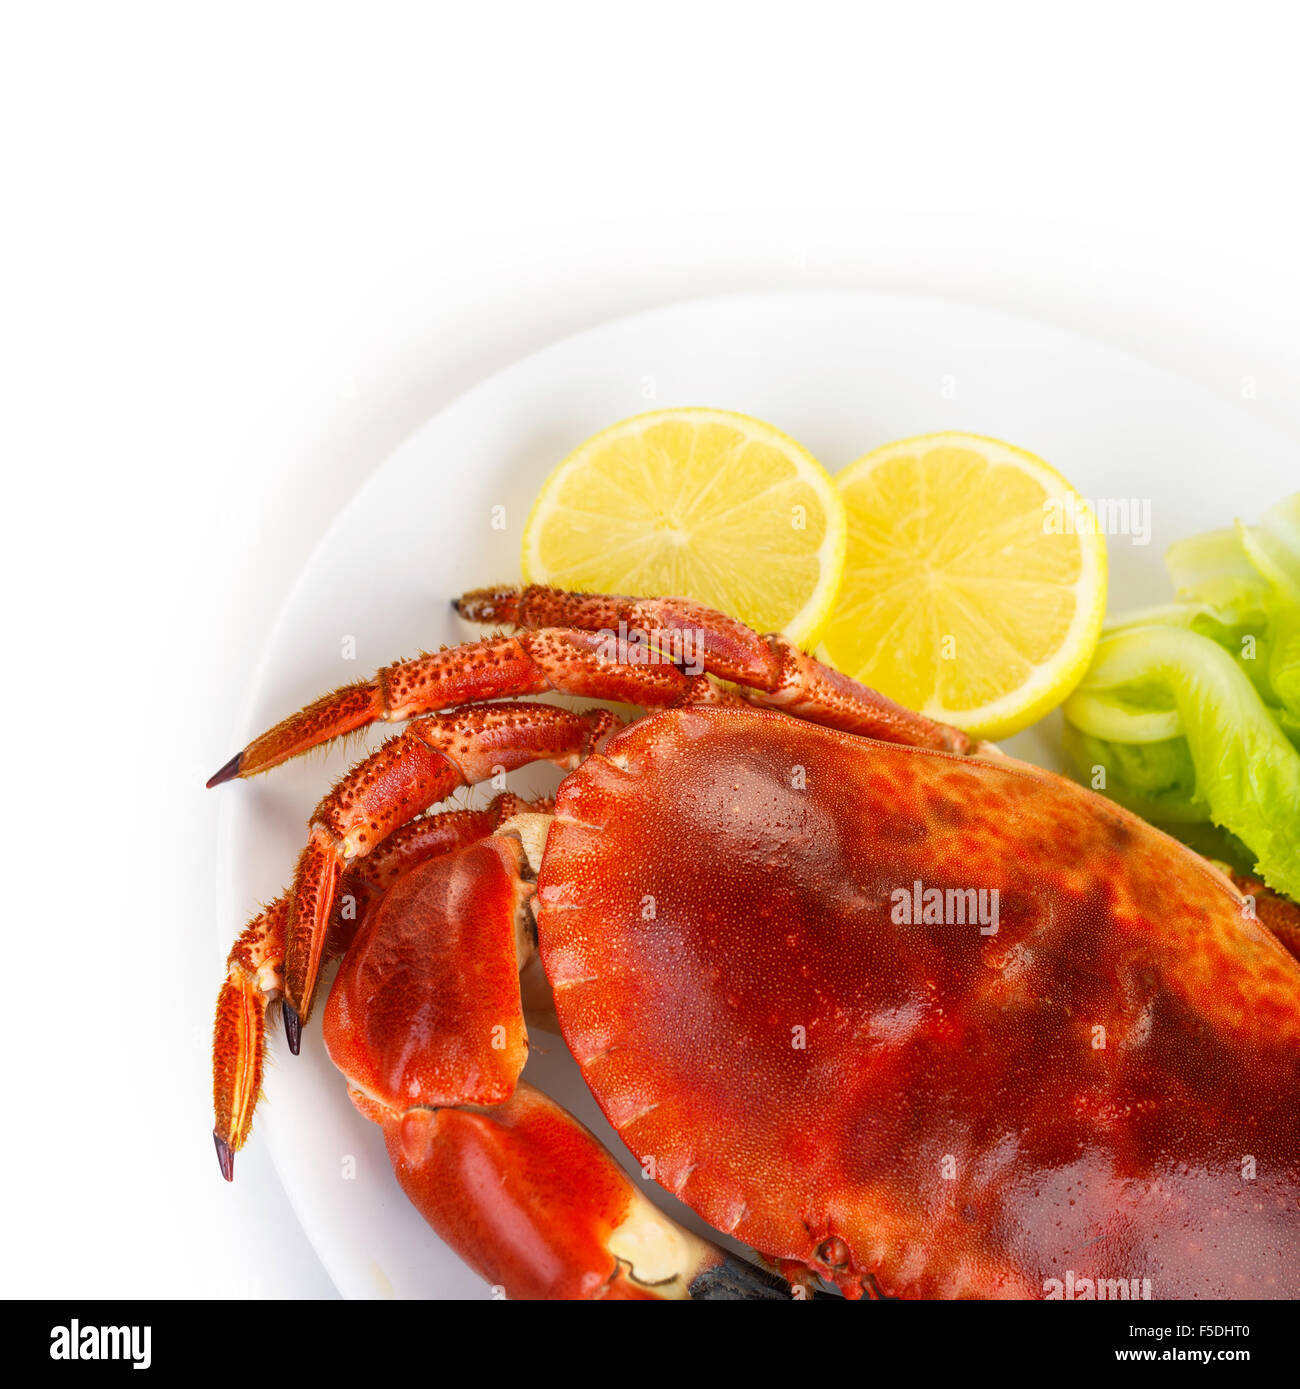 Rot schmackhaft gekochte Krabben mit frischem grünen Salat Salat und Zitrone isoliert auf weißem Hintergrund, köstliche Meeresfrüchte Stockfoto